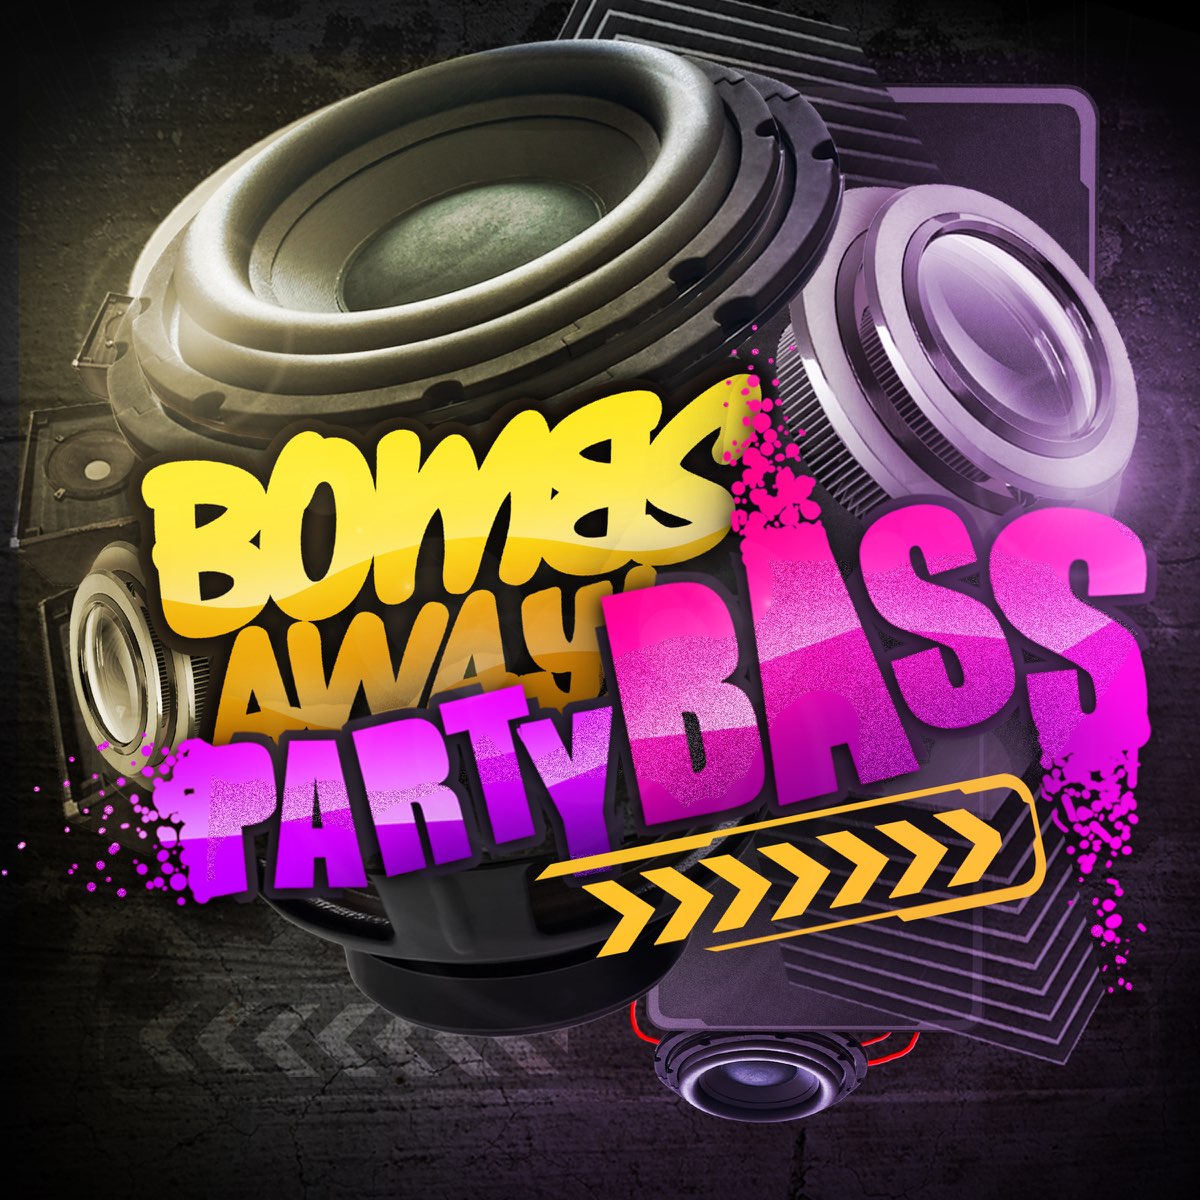 Bass Remix. Bass вечеринка. Ремикс басс. Bombs away Party Bass. Full bass remix